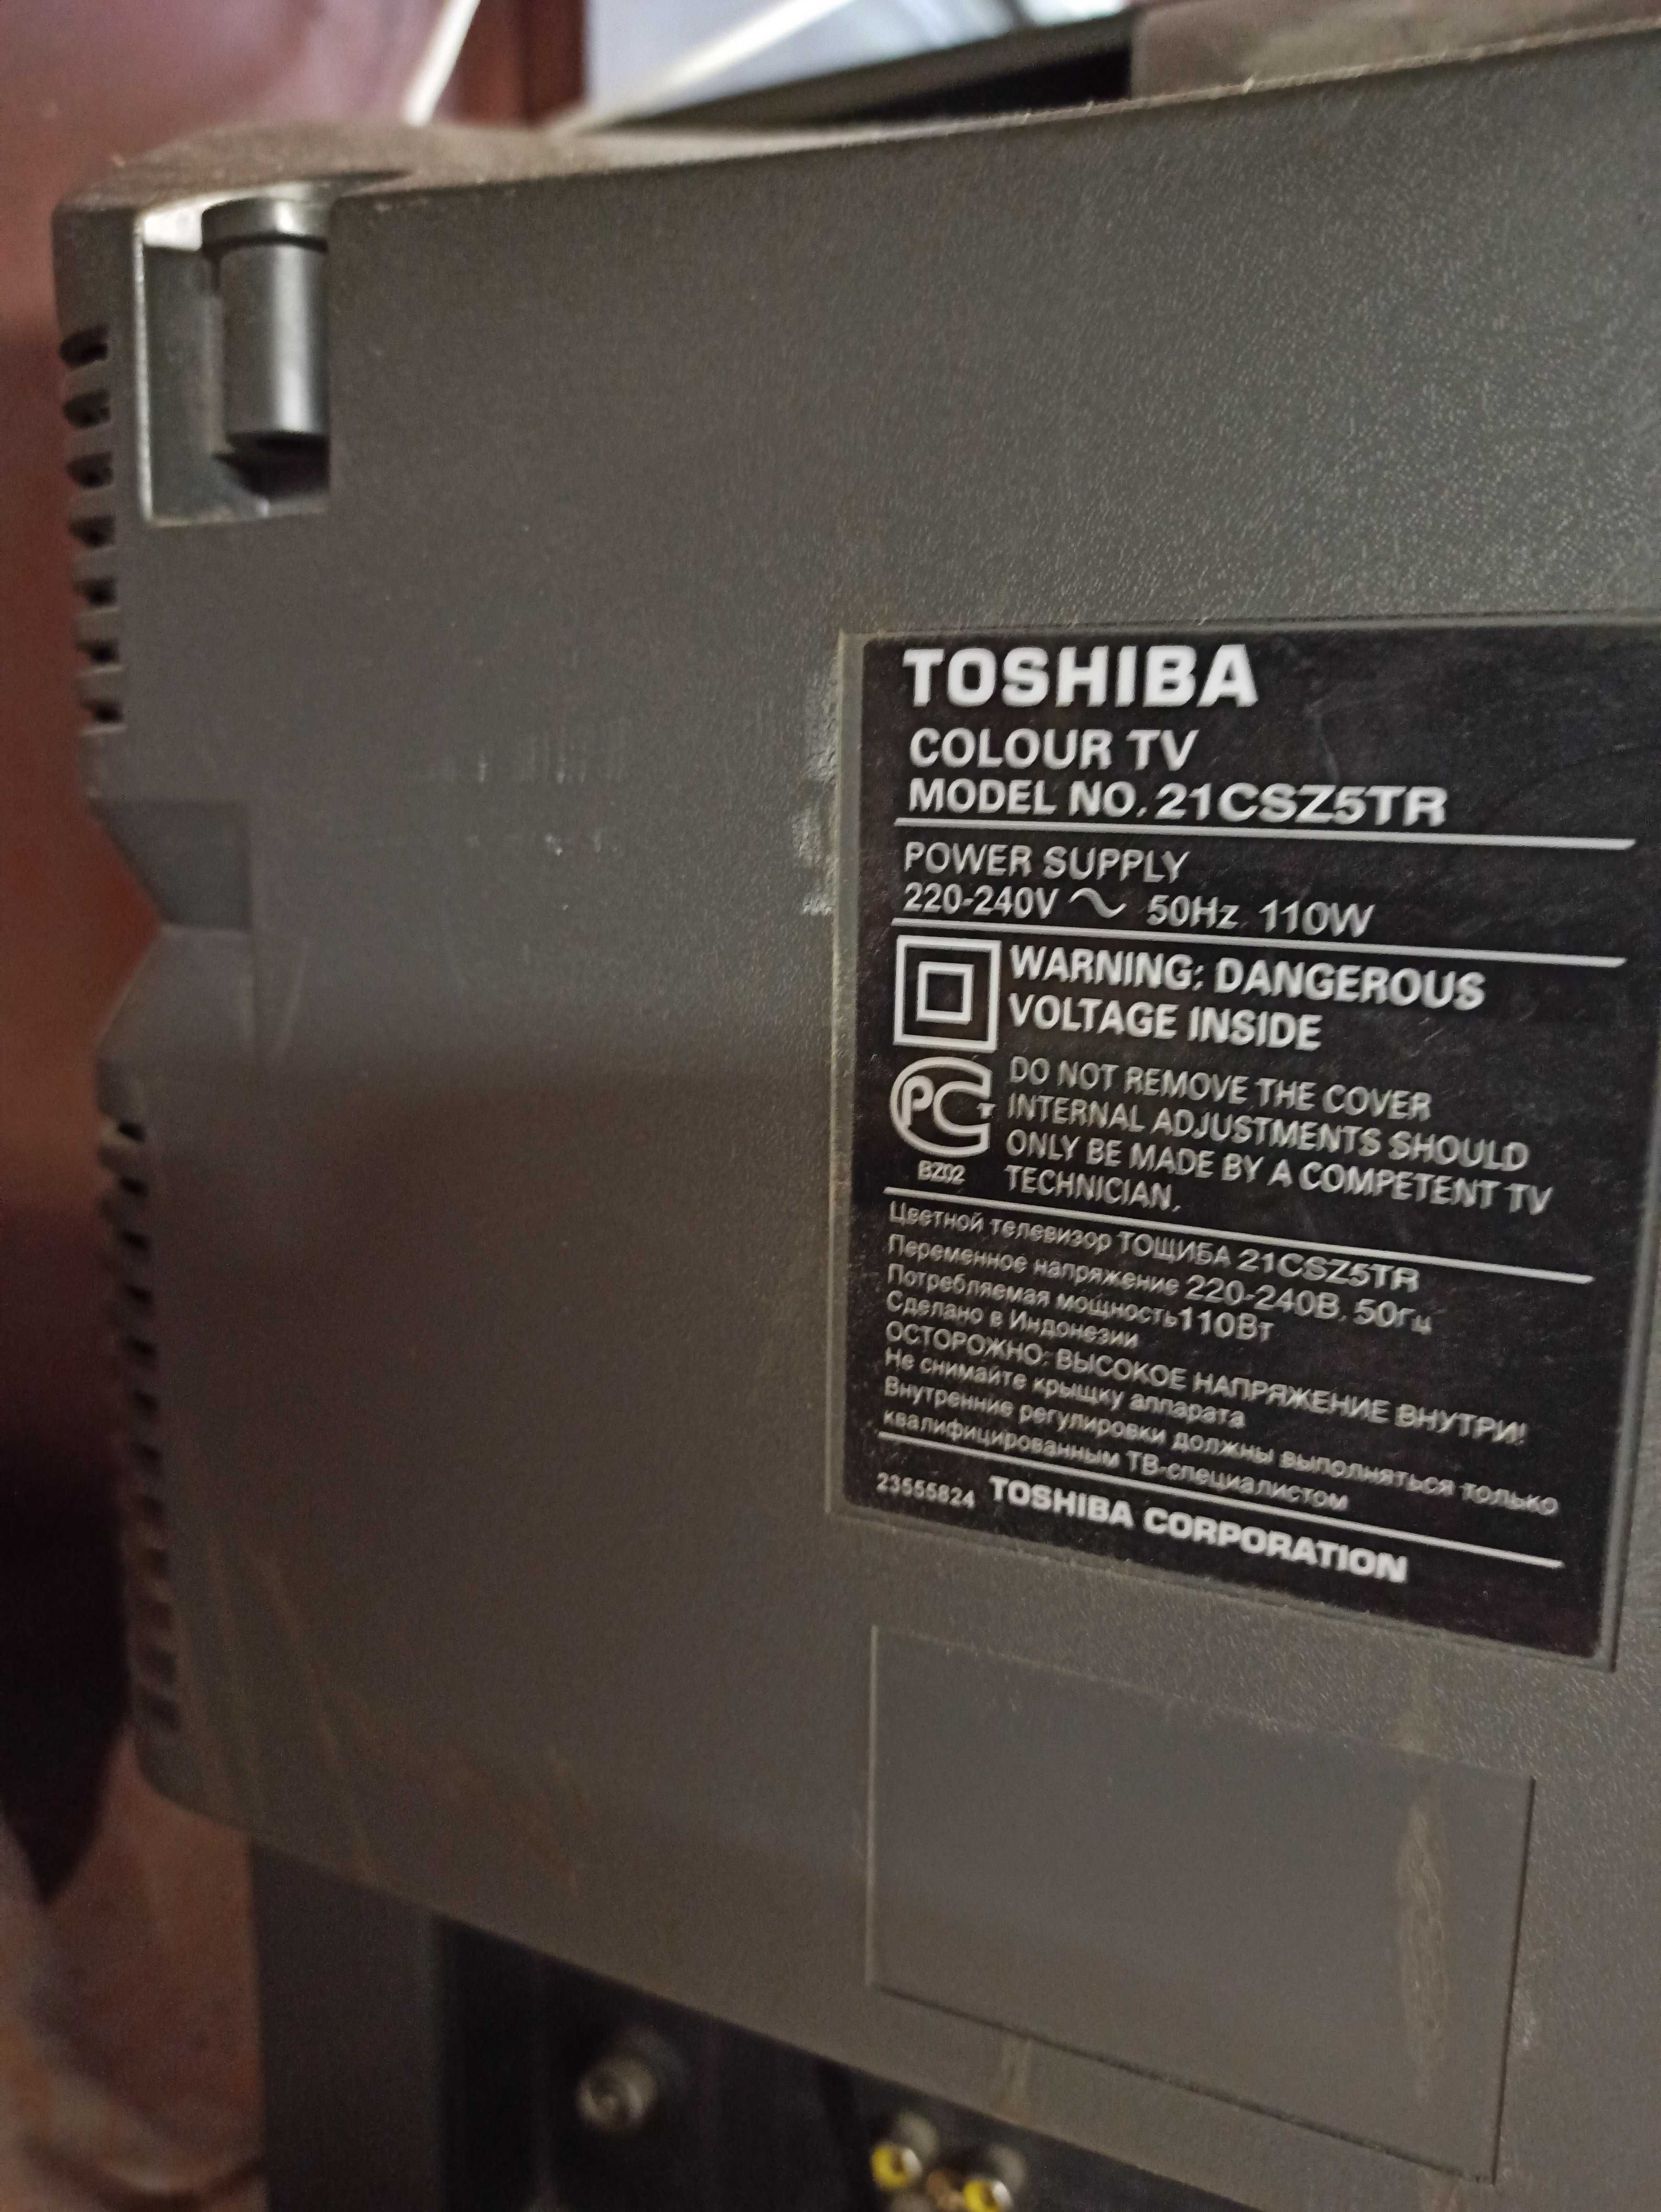 ТВ Toshiba модель  21CSZ5TR отдельно или в комплекте